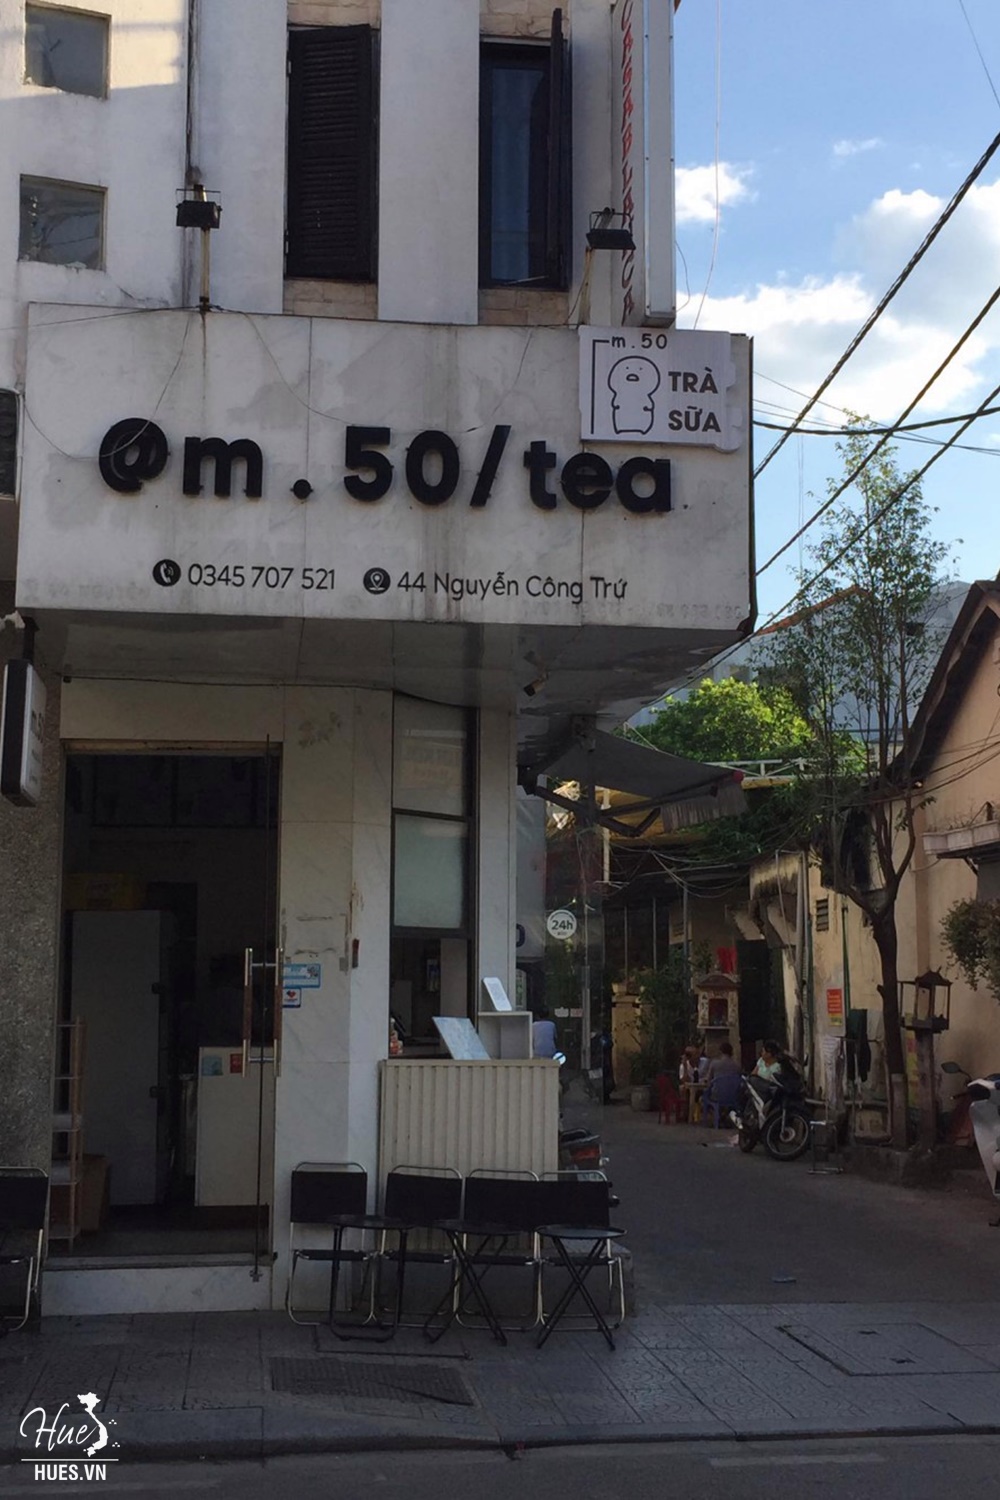 Tiệm trà mét năm mươi – m.50 tea